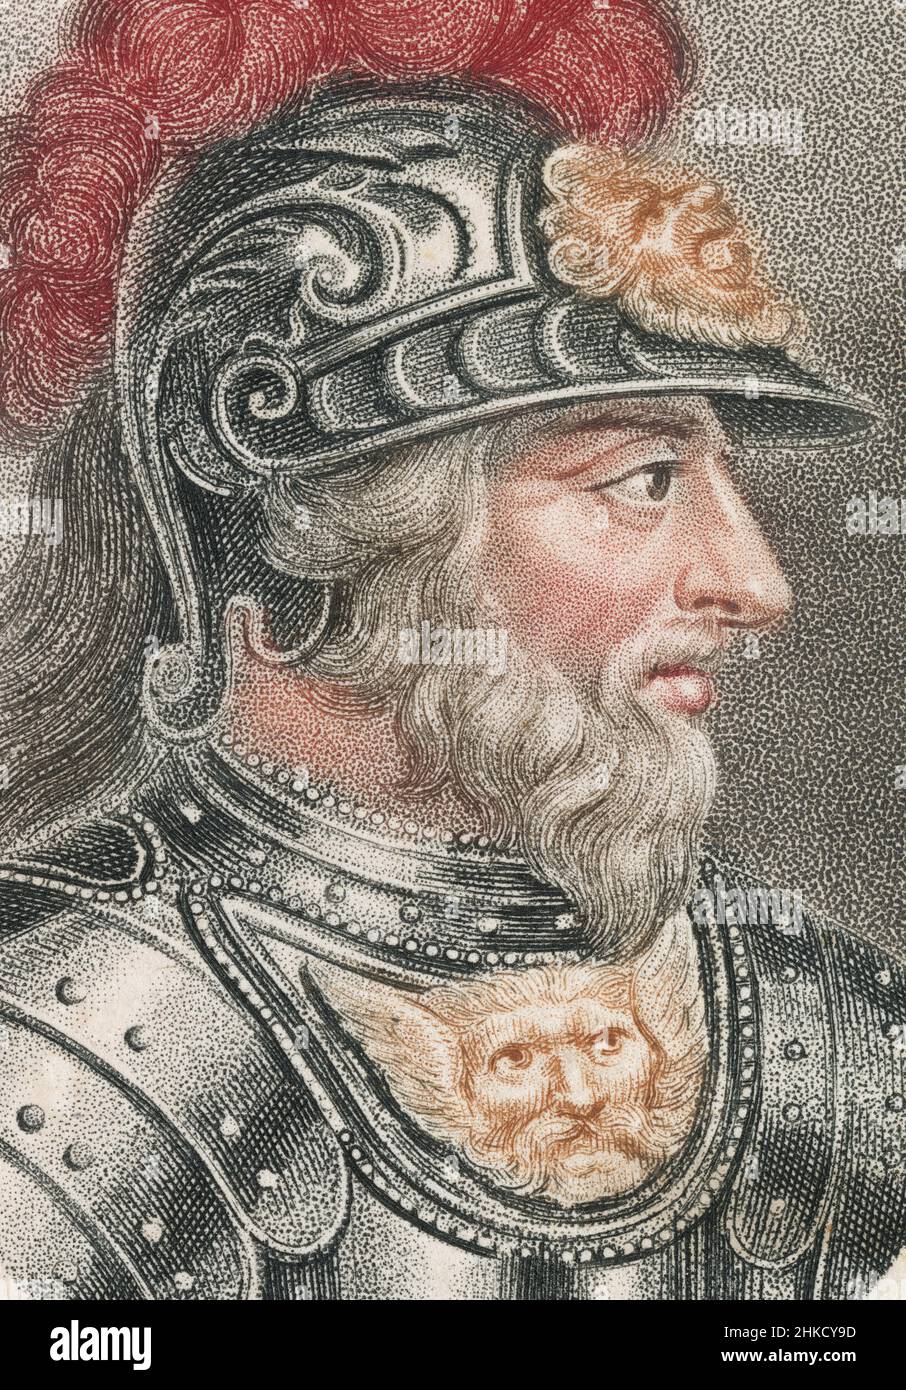 Antica incisione del 1803 di Stefano, re d'Inghilterra. Stefano (1092-1154), spesso chiamato Stefano di Blois, fu re d'Inghilterra dal 22 dicembre 1135 alla sua morte nel 1154. FONTE: INCISIONE ORIGINALE Foto Stock